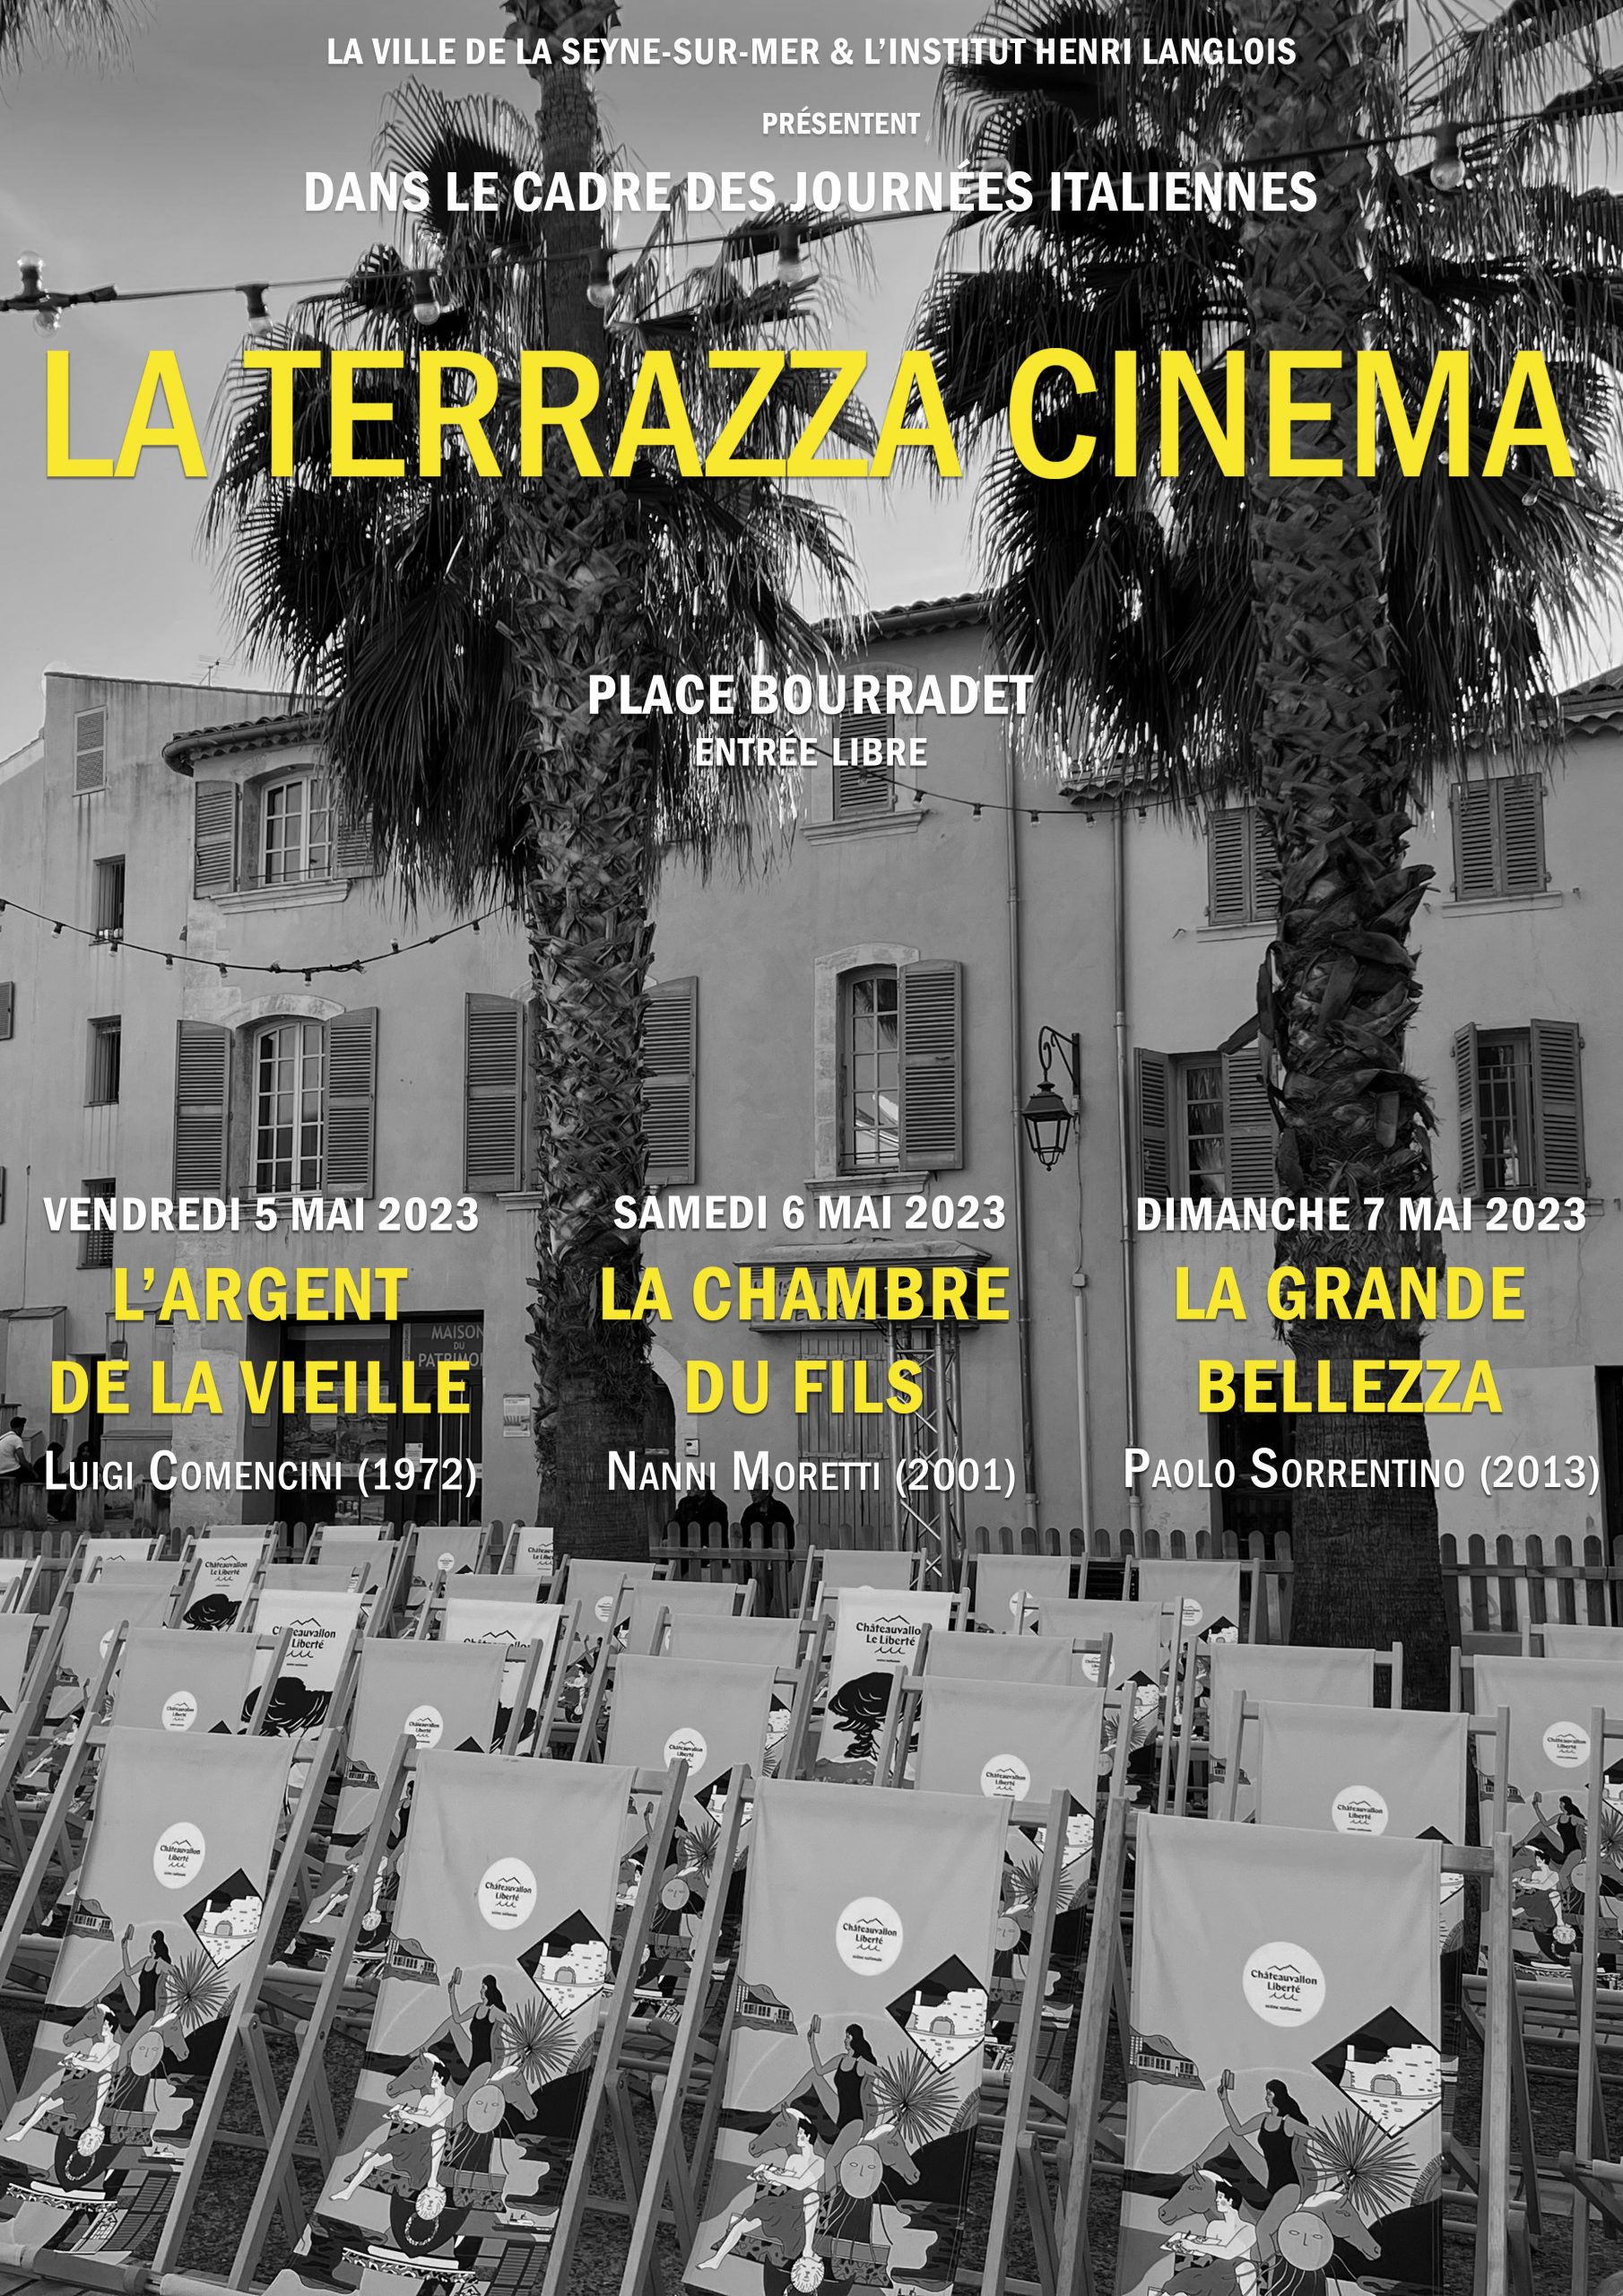 La Terrazza Cinéma &#8211; Journées italiennes de la Seyne-sur-Mer  5-6-7 mai 2023 visuel la terrazza cinema 2023  scaled